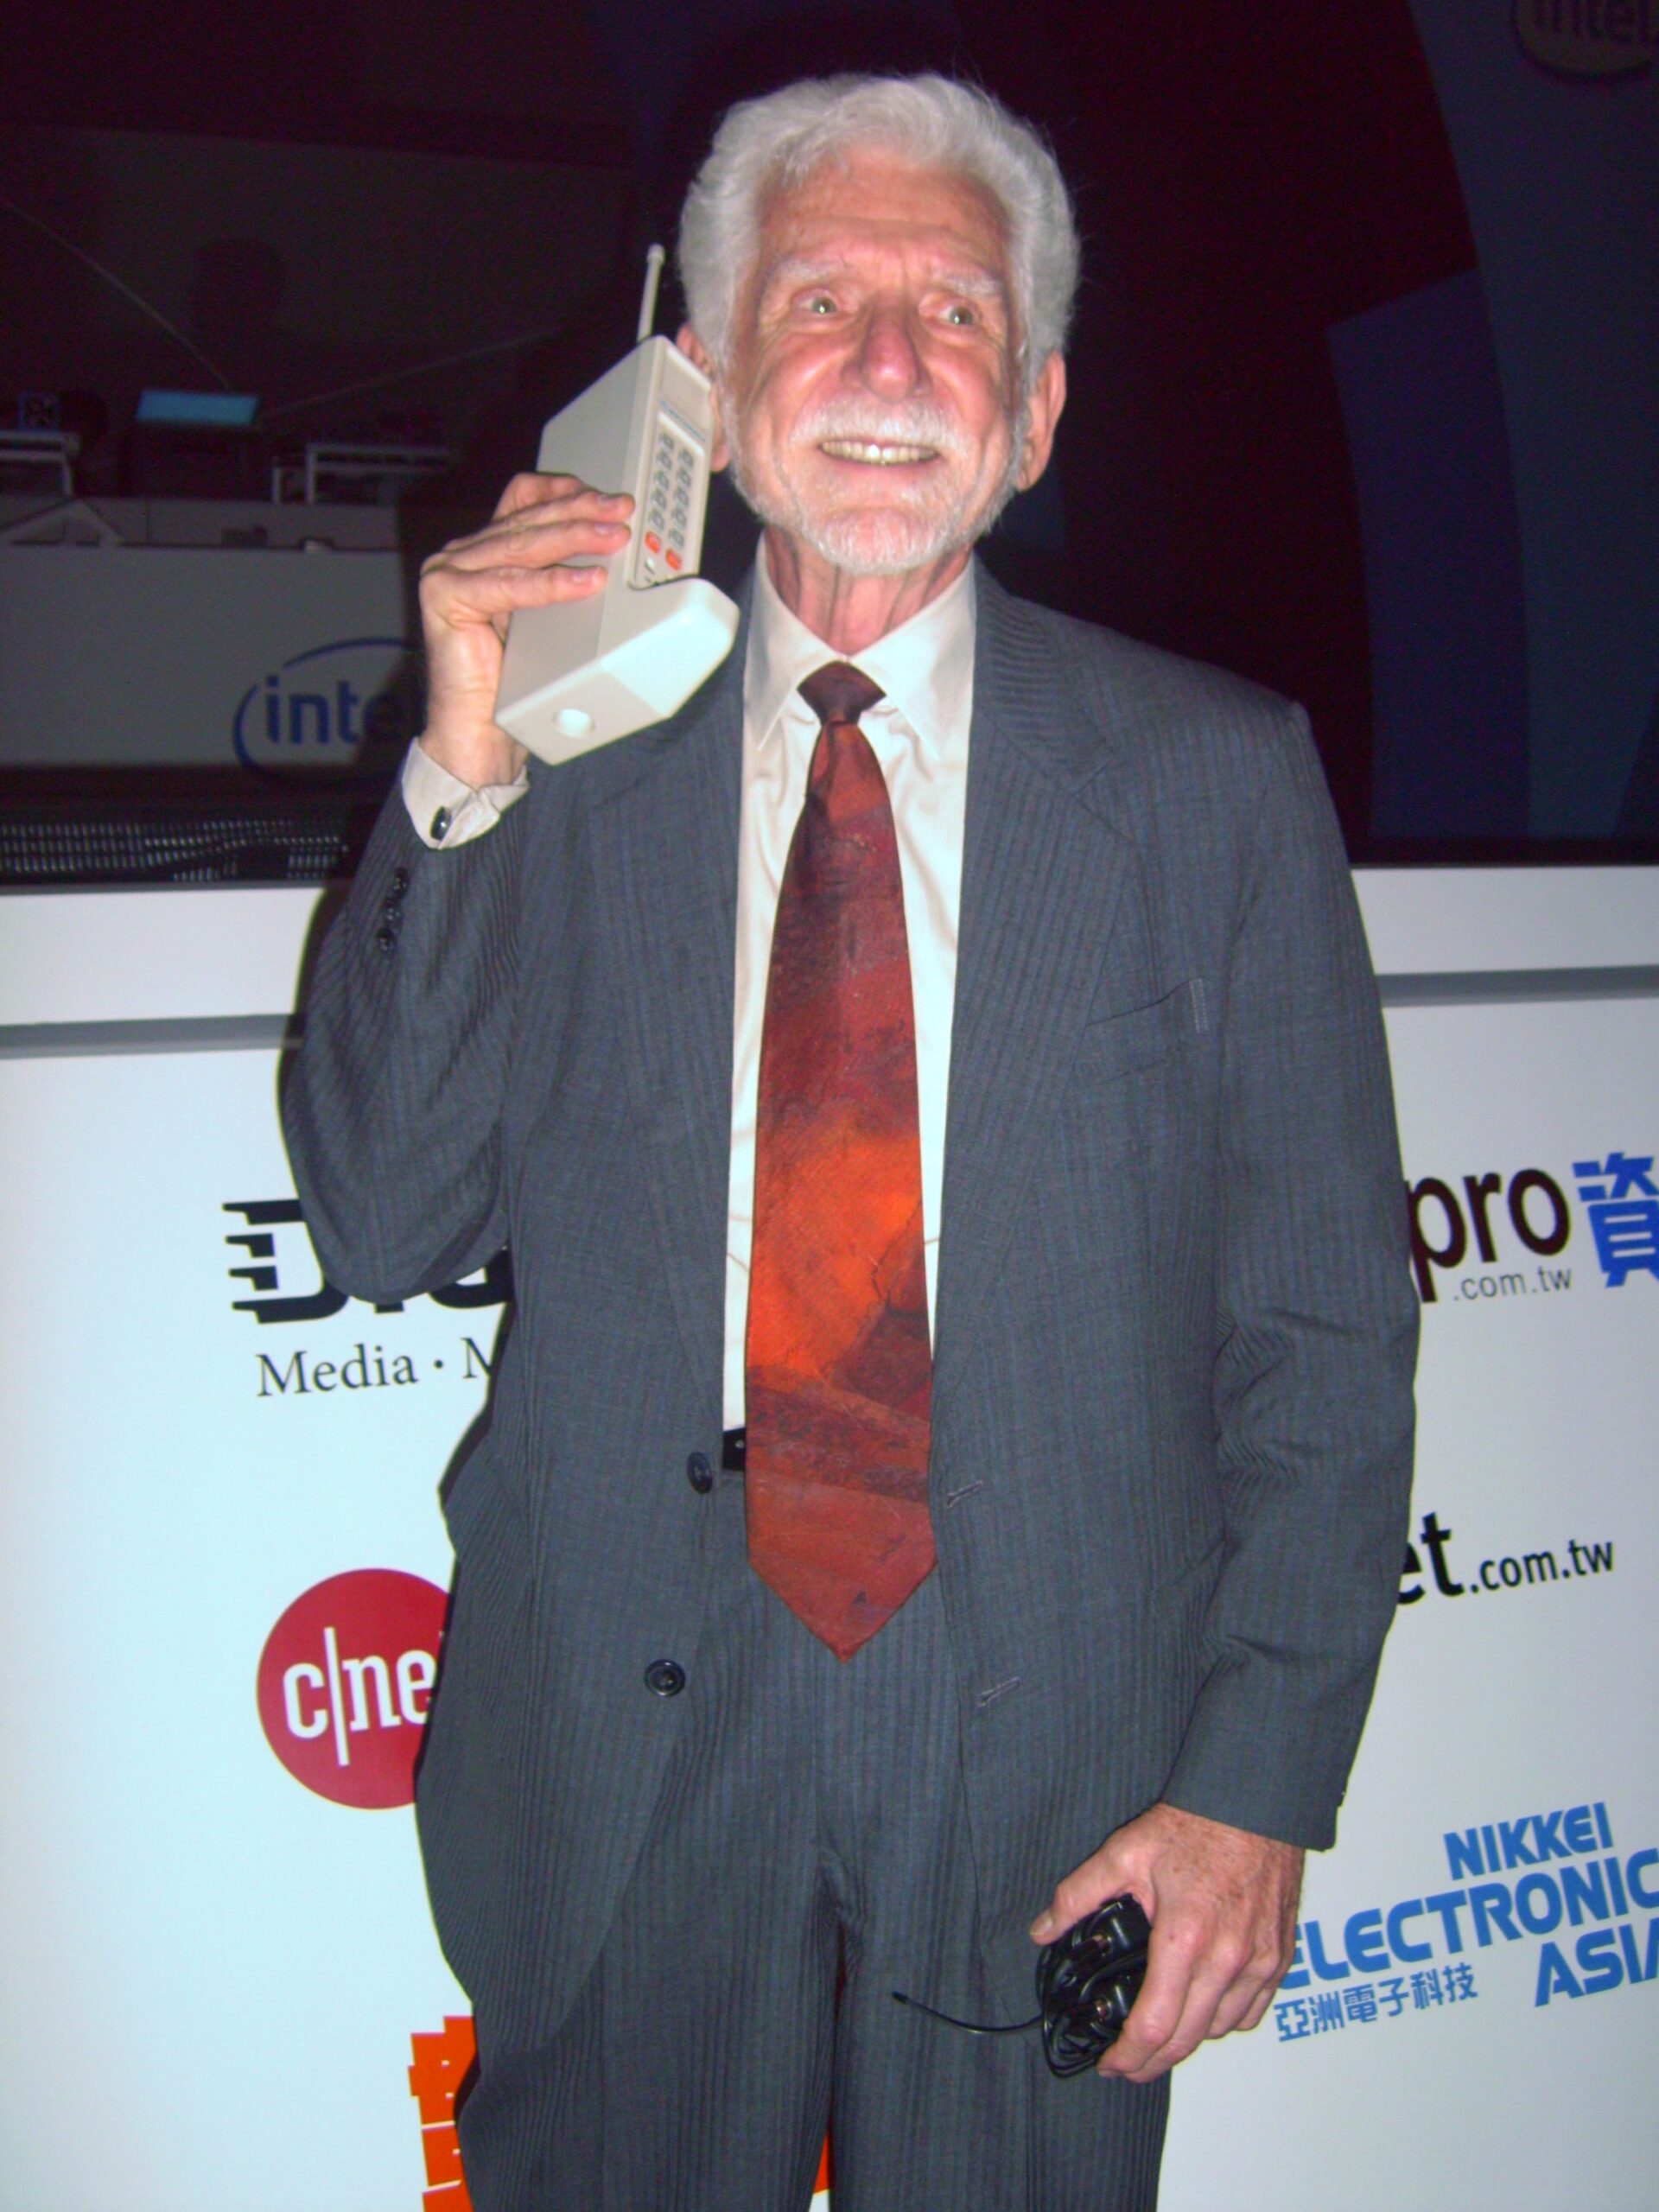 Перший дзвінок по мобільному телефону здійснює Мартін Купер.